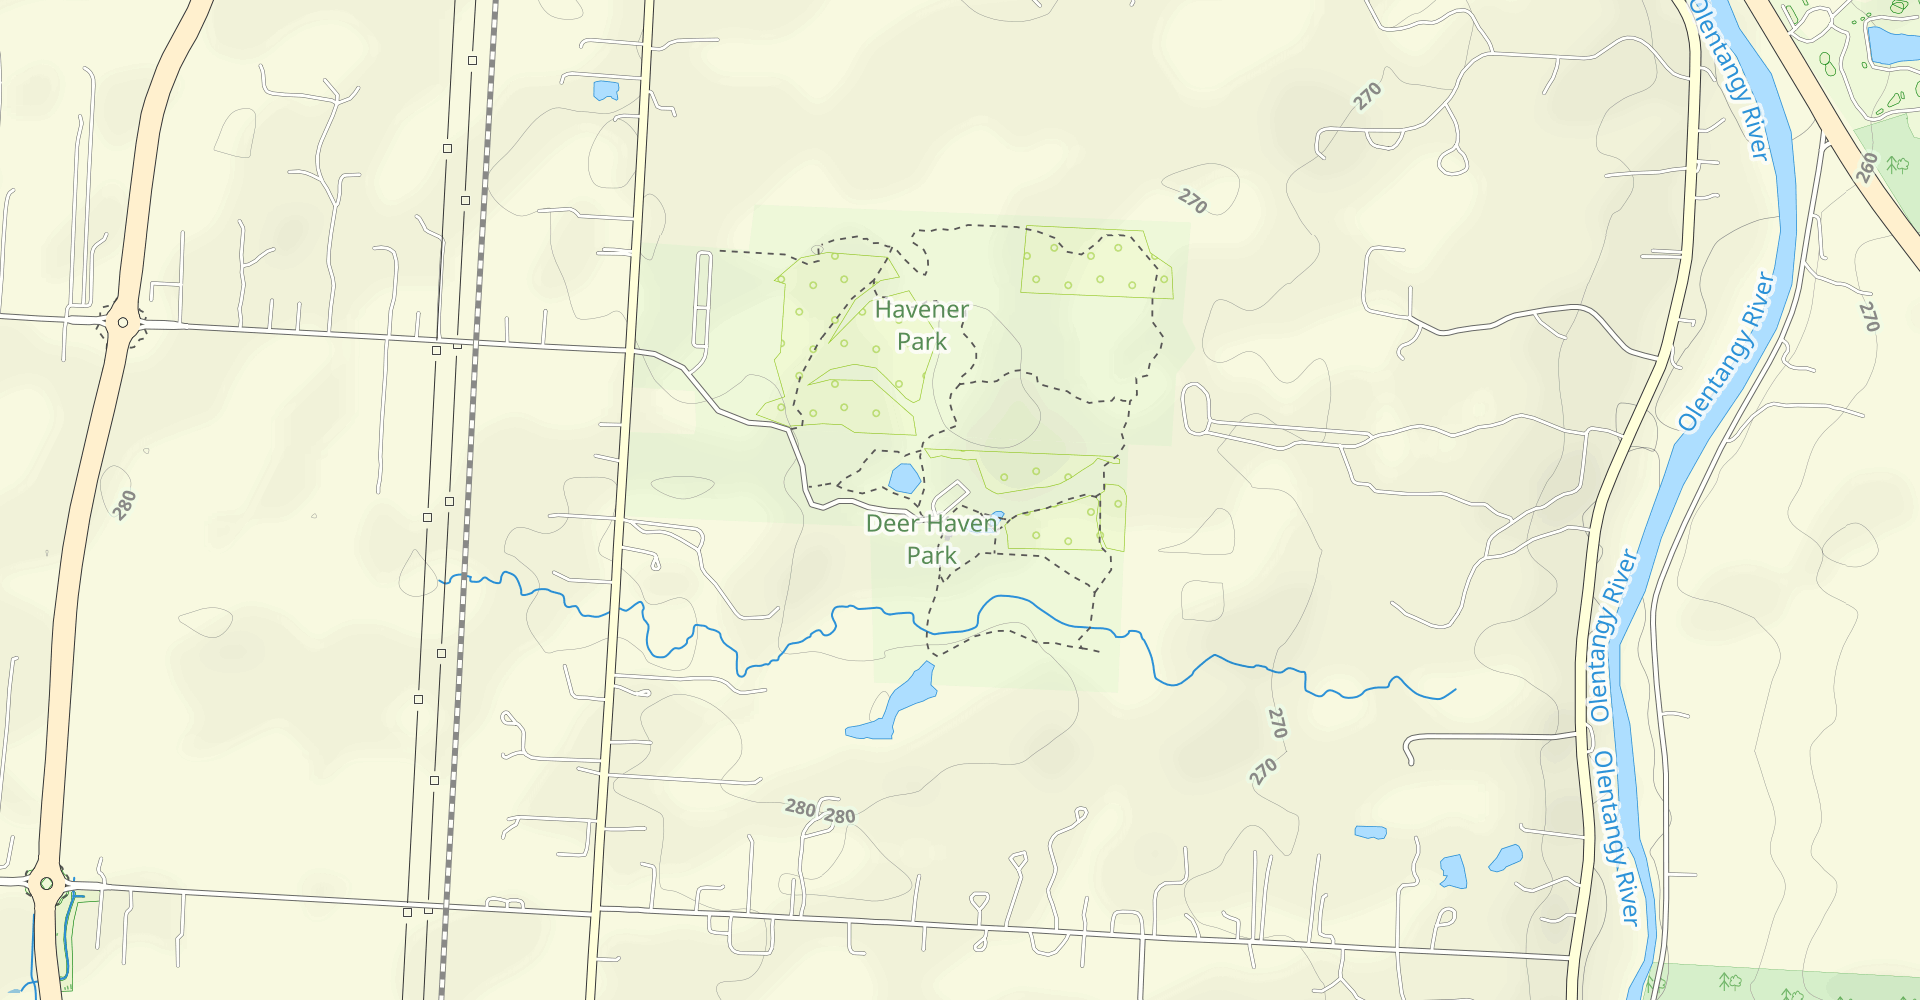 Deer Haven and Havener Park Loop